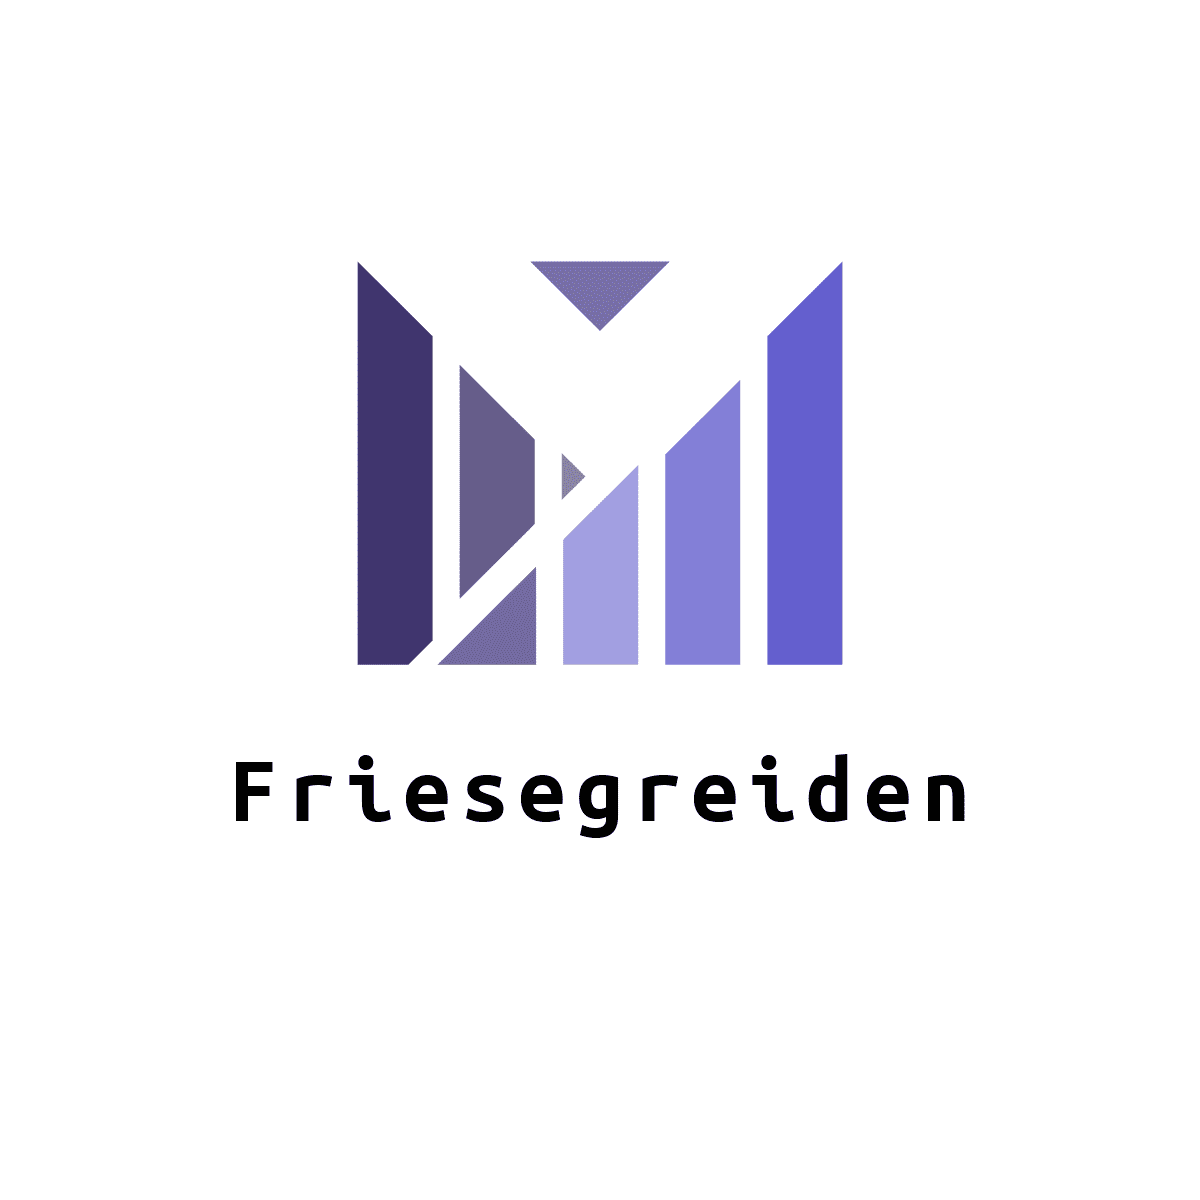 Friesegreiden